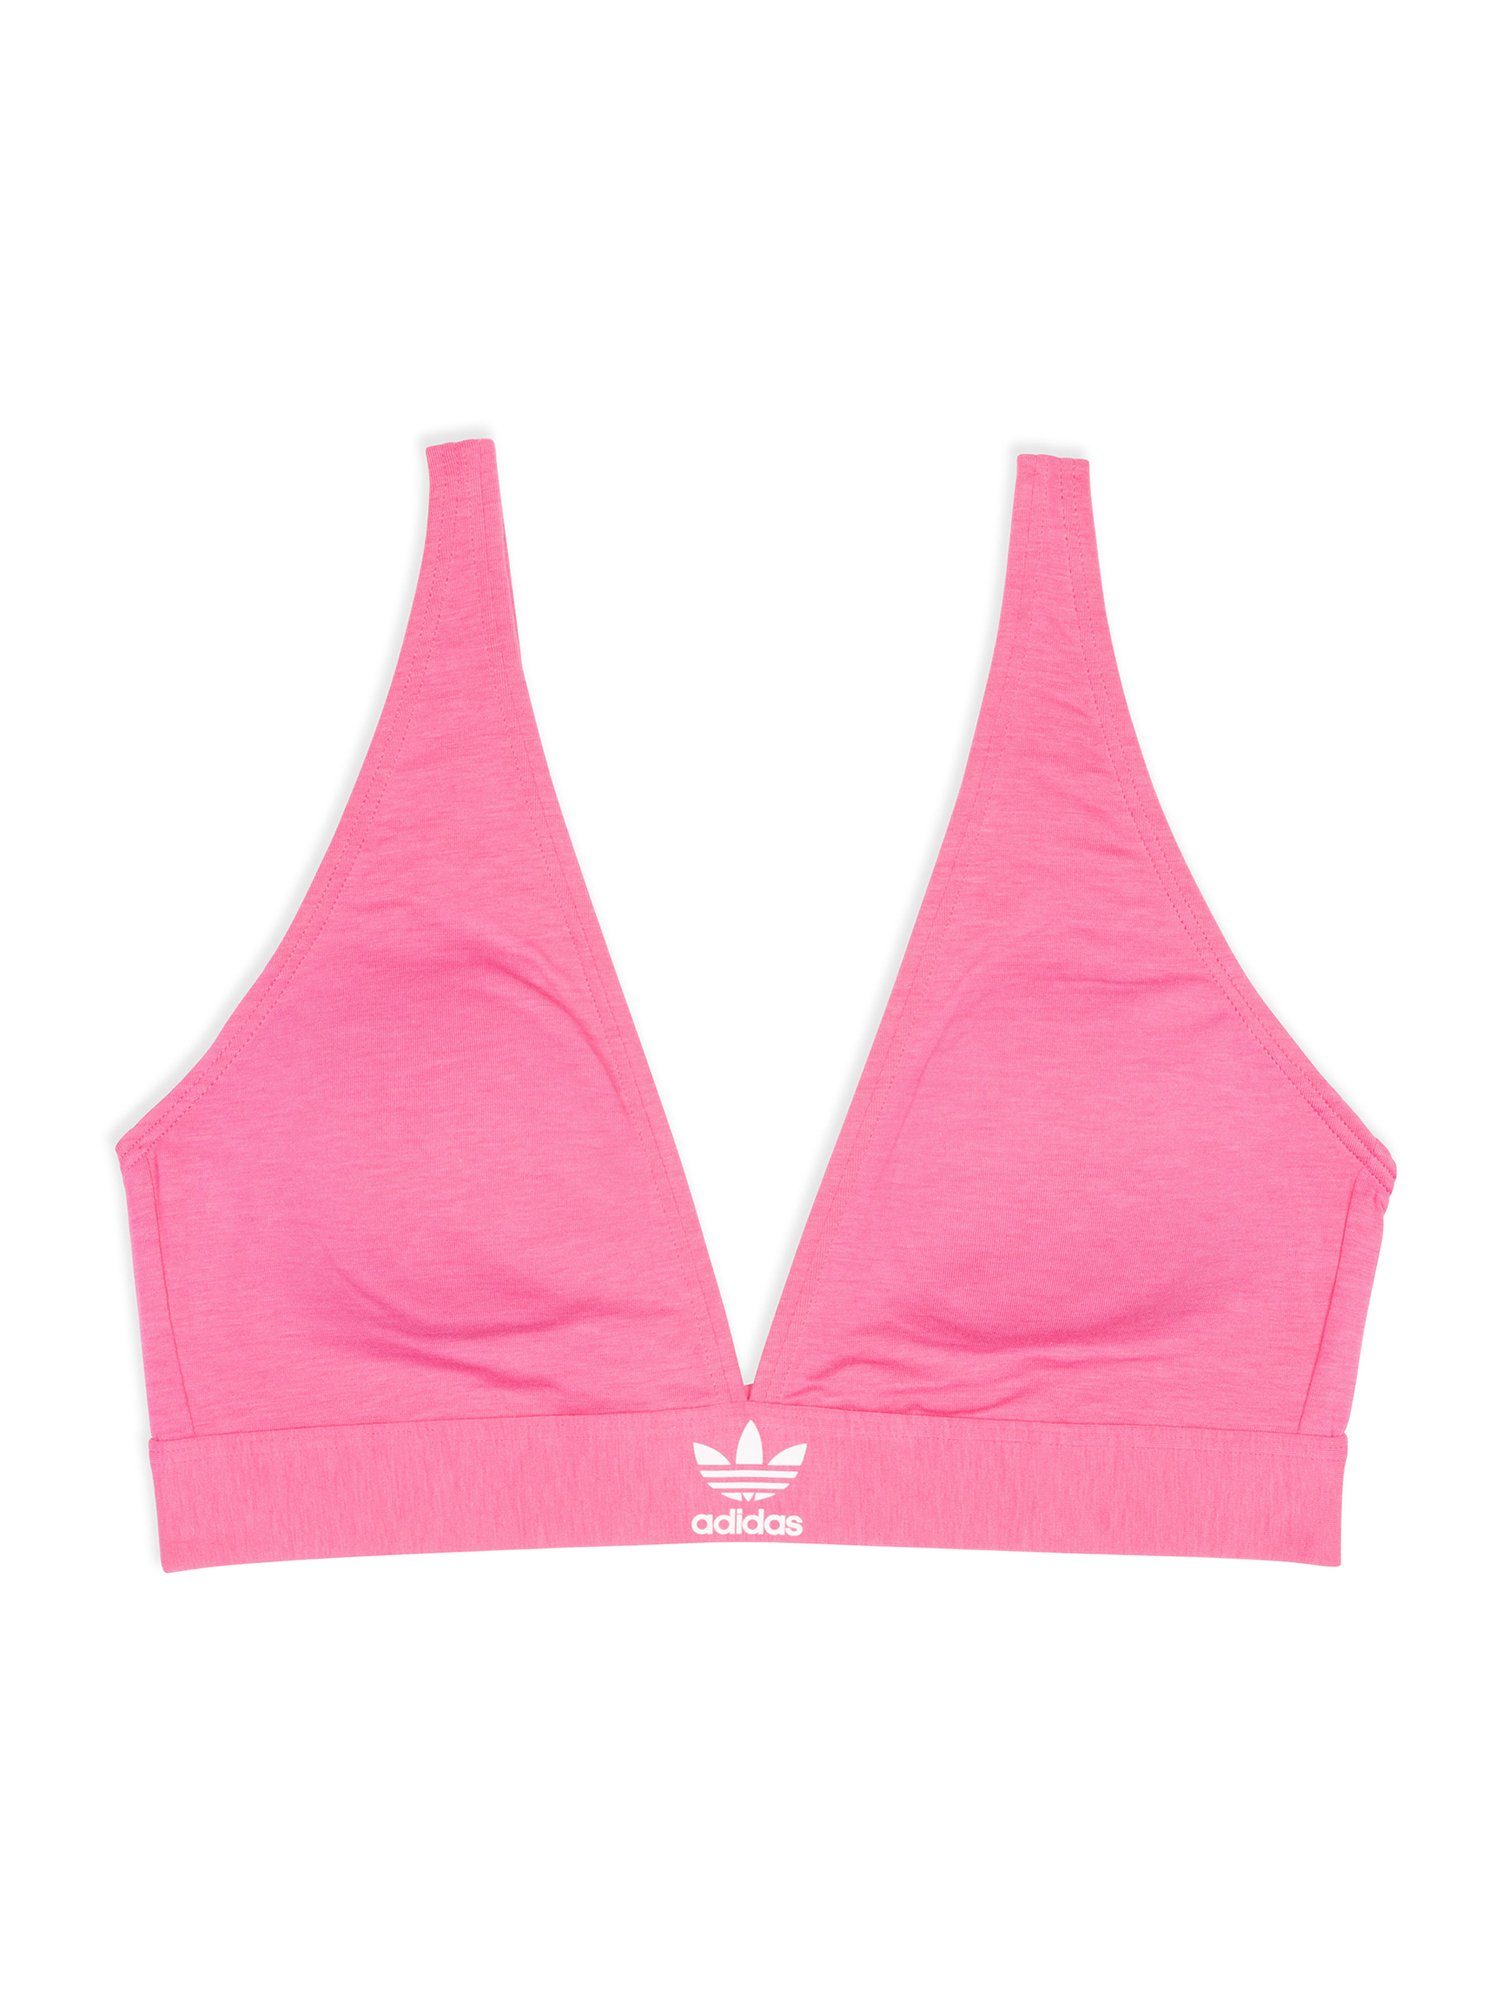 adidas Originals Triangel-BH Unlined bustier bra bralette lucid pink